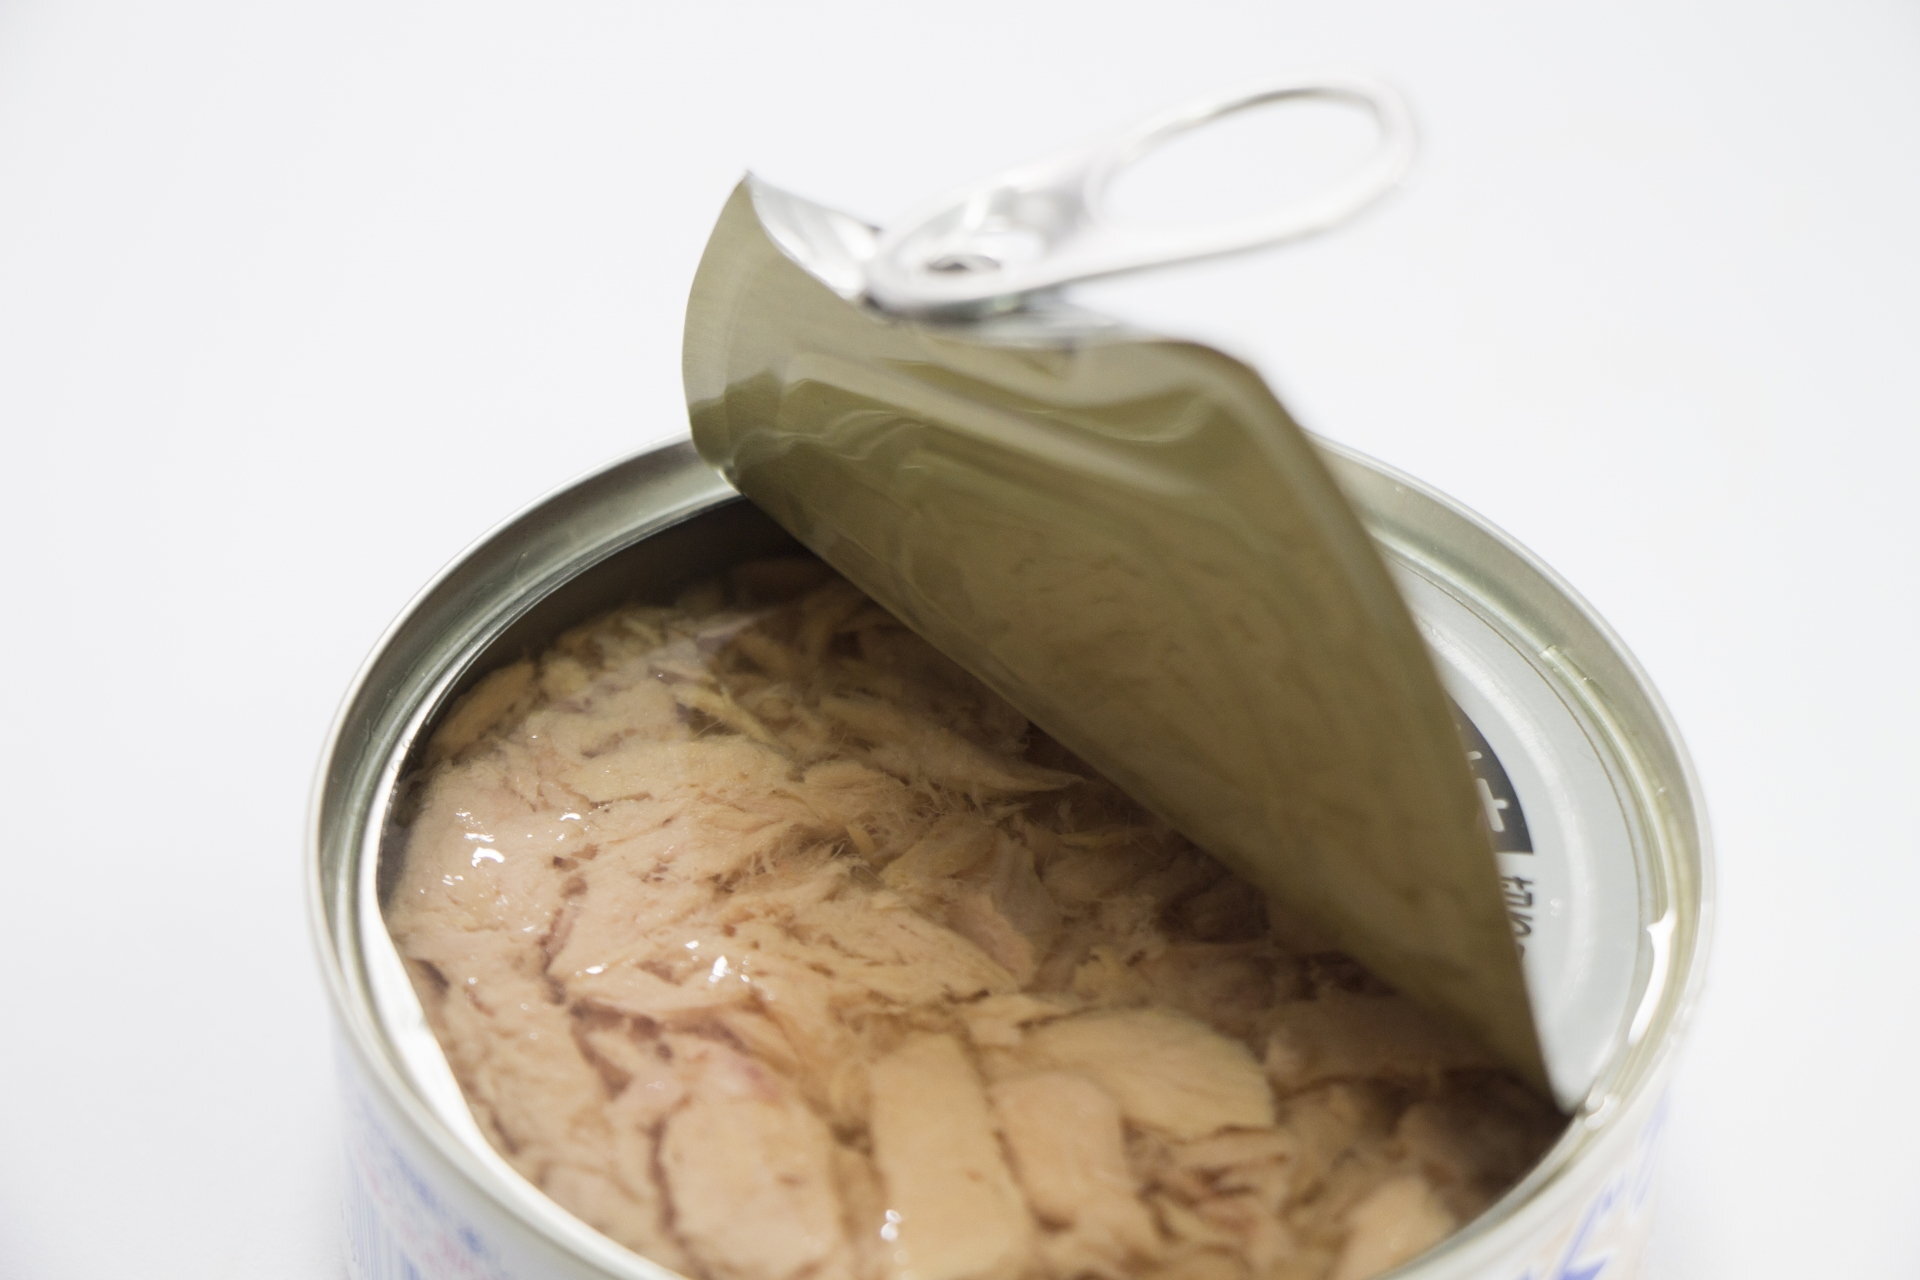 ツナ缶とうどんでできる絶品メニューをご紹介 簡単ですぐにできるレシピとは Jouer ジュエ